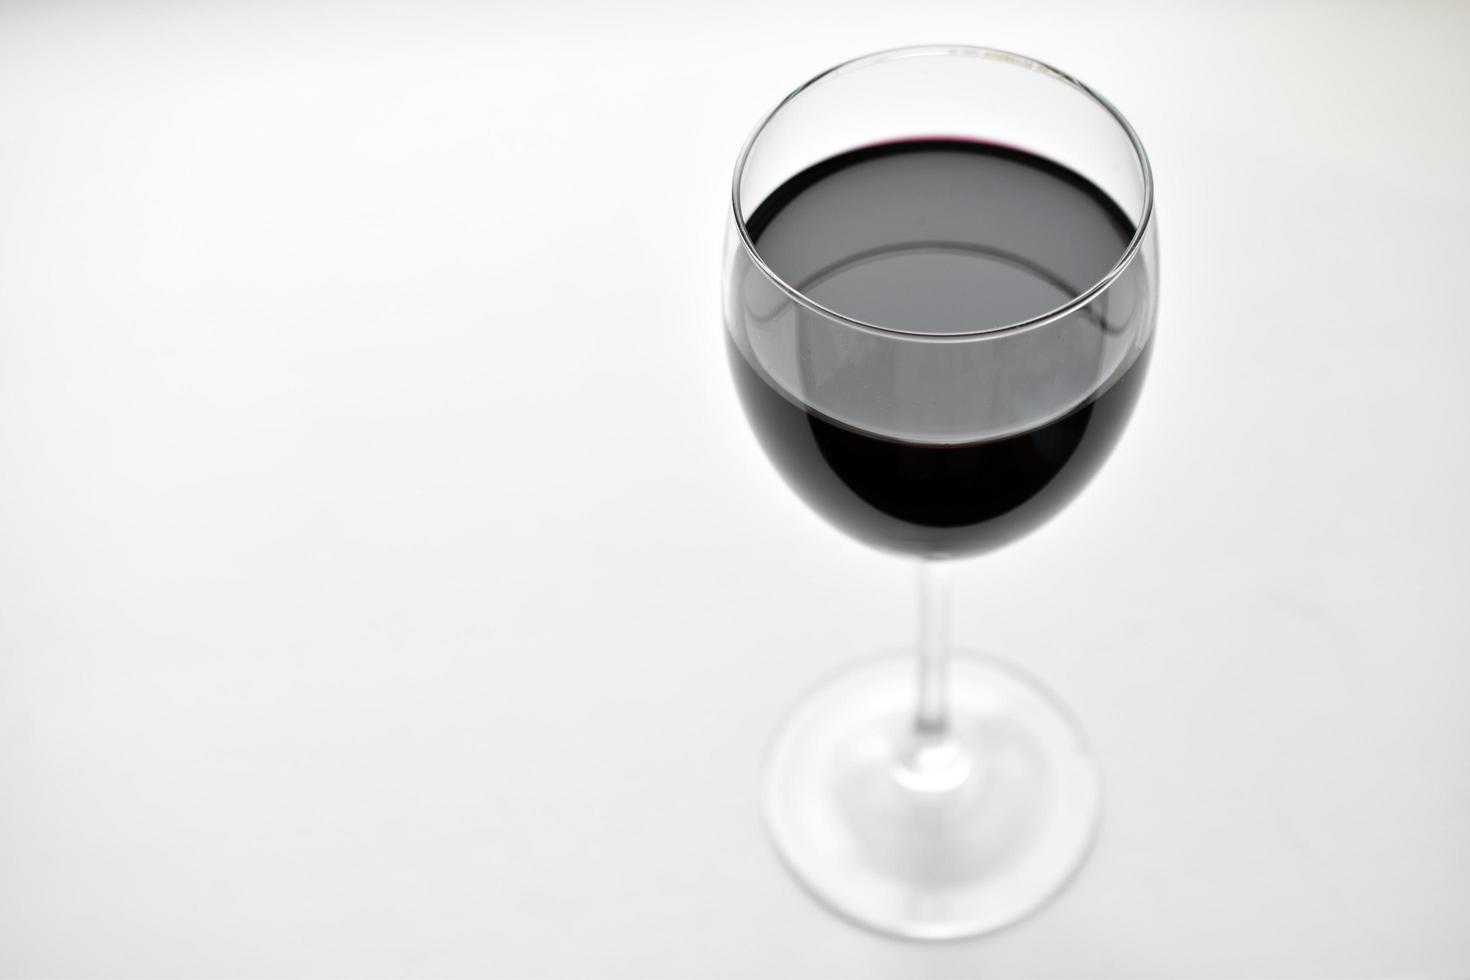 grande bicchiere di vino rosso su sfondo bianco foto